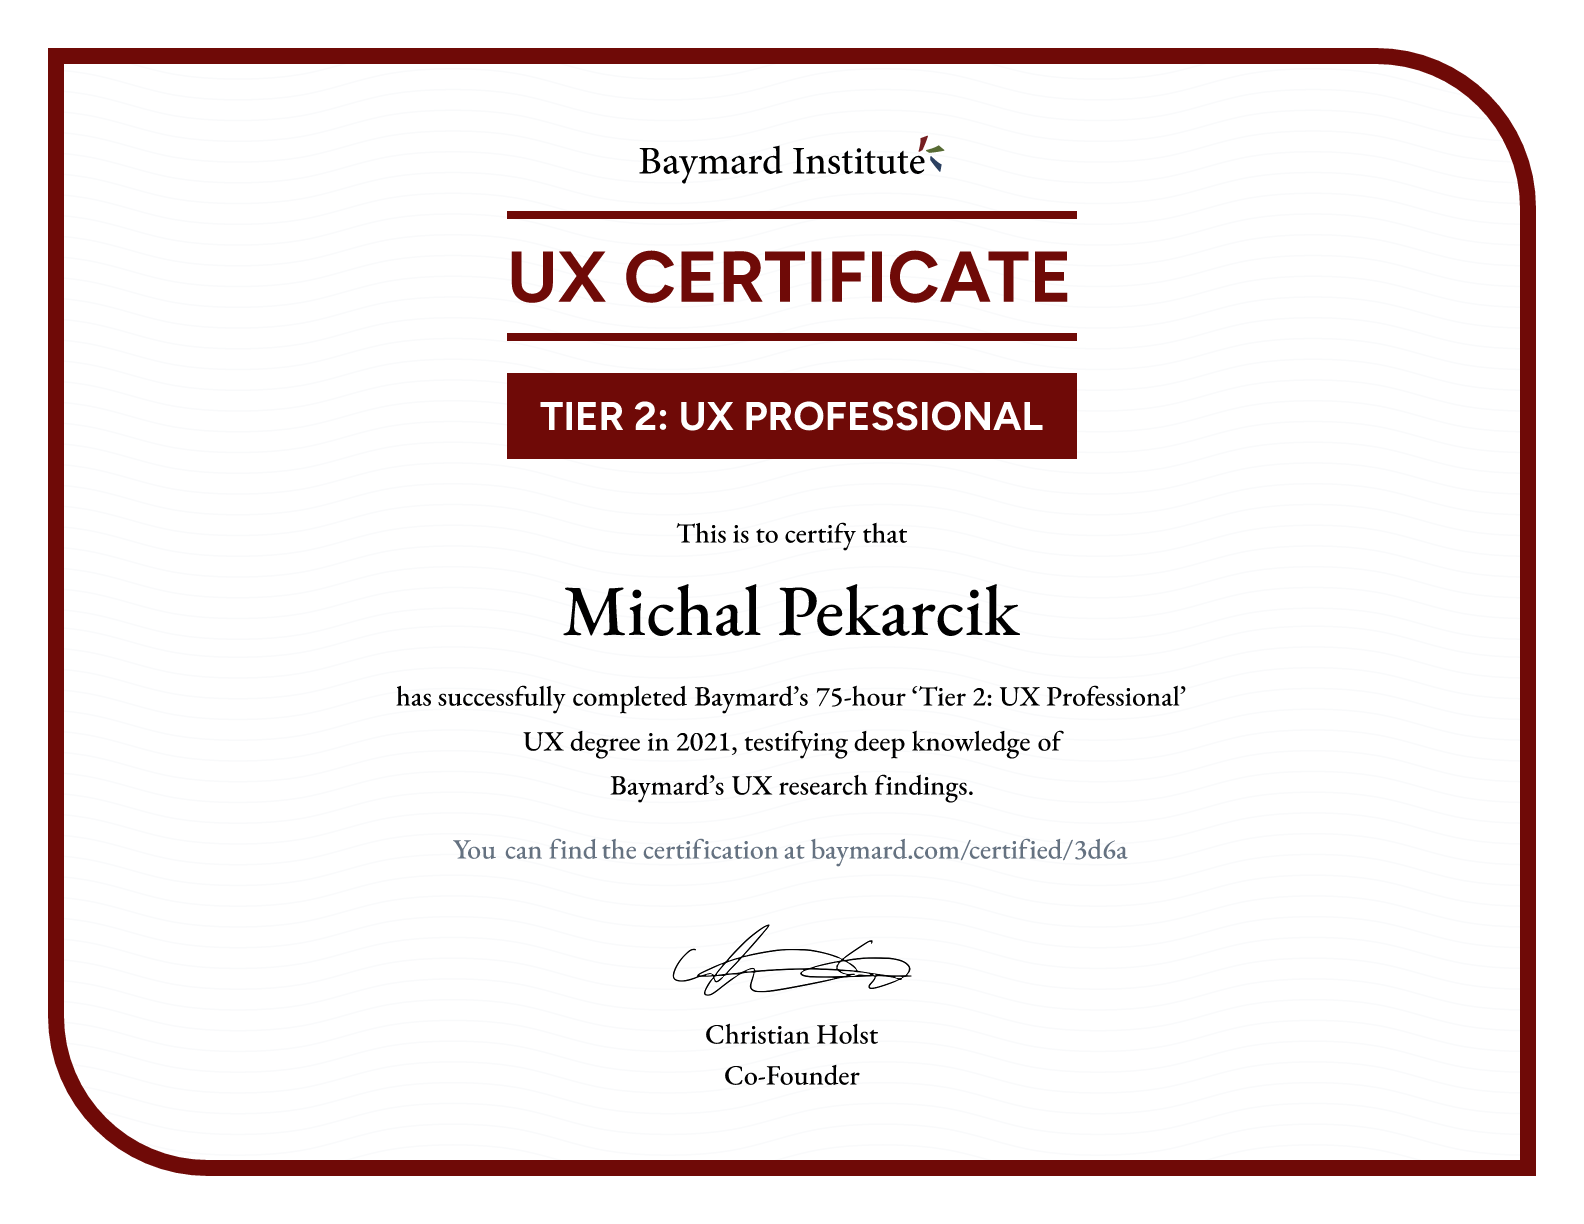 Michal Pekarcik’s certificate